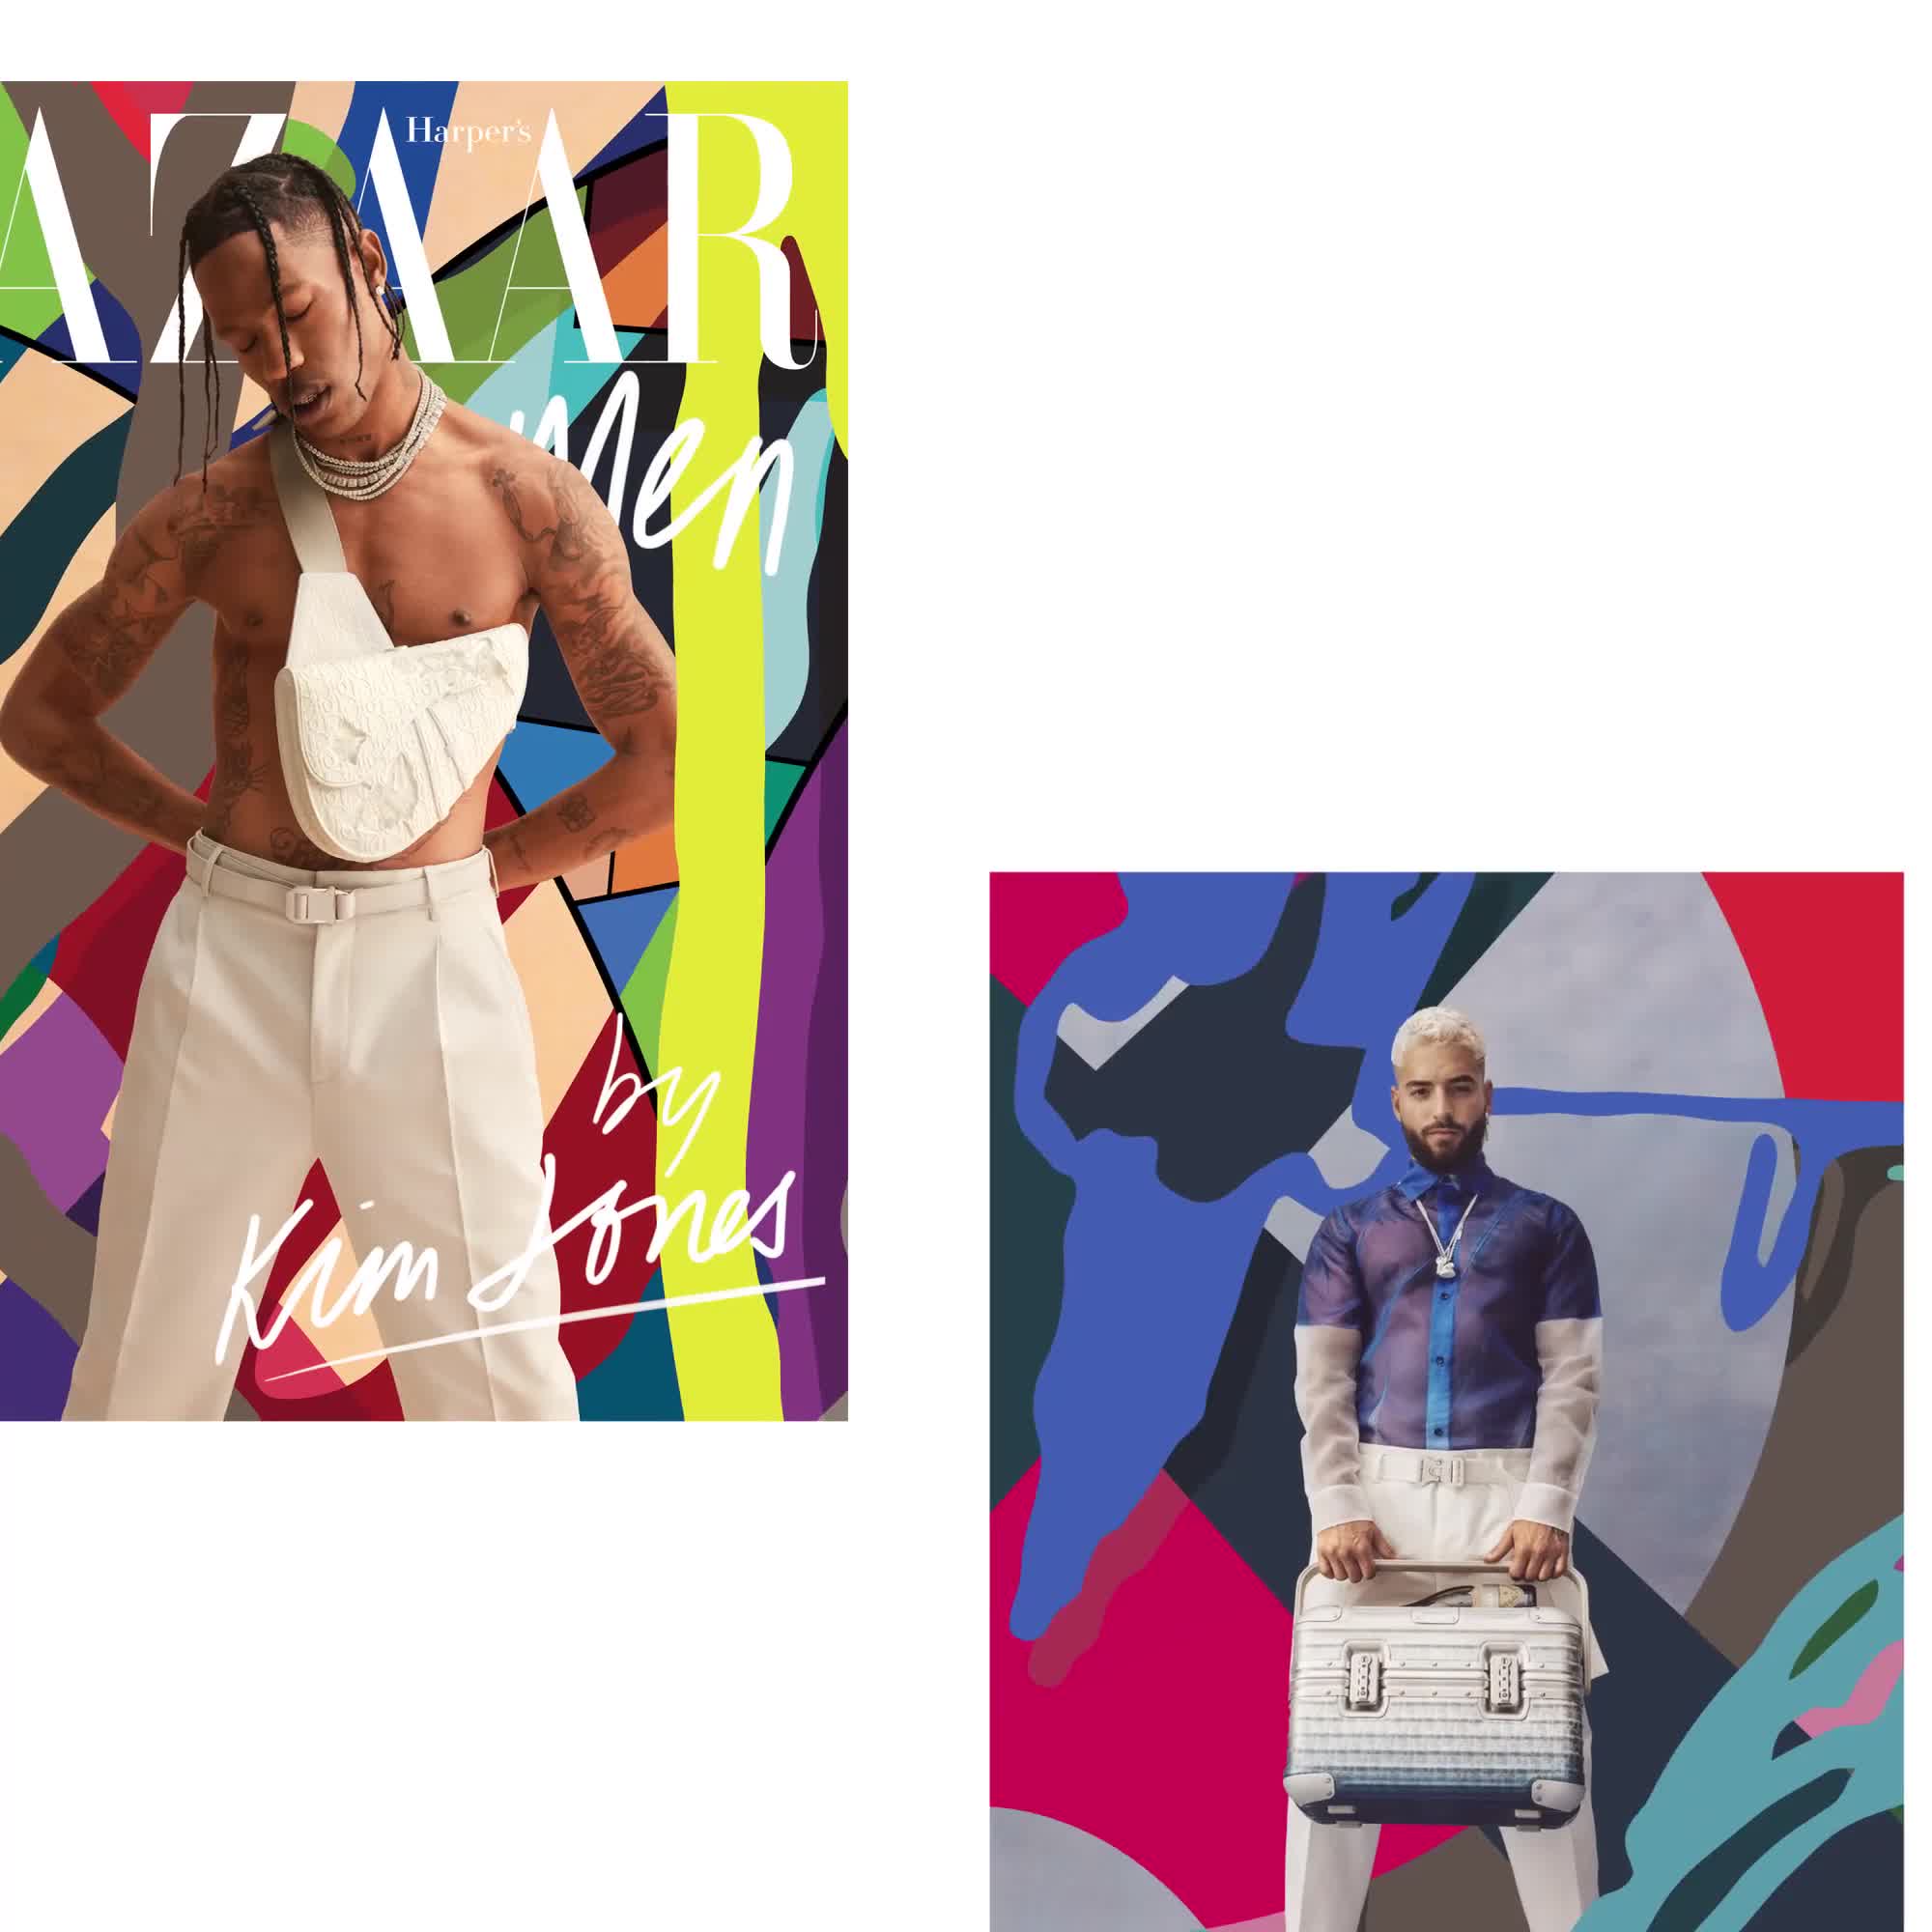 Rap-Up on X: Travis Scott covers Harper's BAZAAR wearing Dior